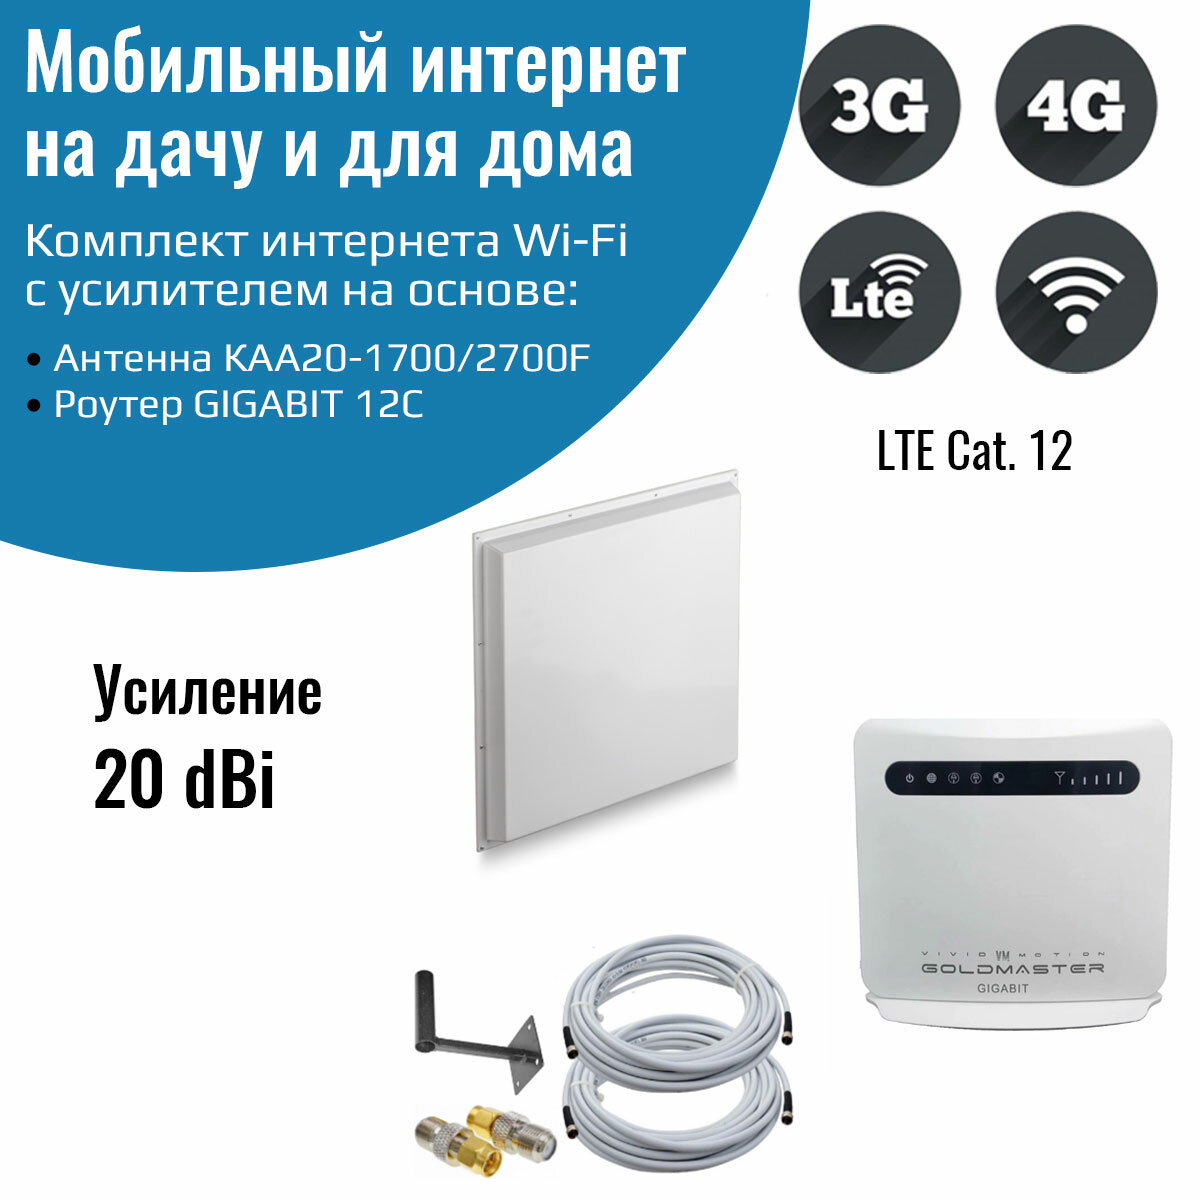 Роутер 3G/4G-WiFi GIGABIT 12C с уличной антенной КАА20-1700/2700F MIMO